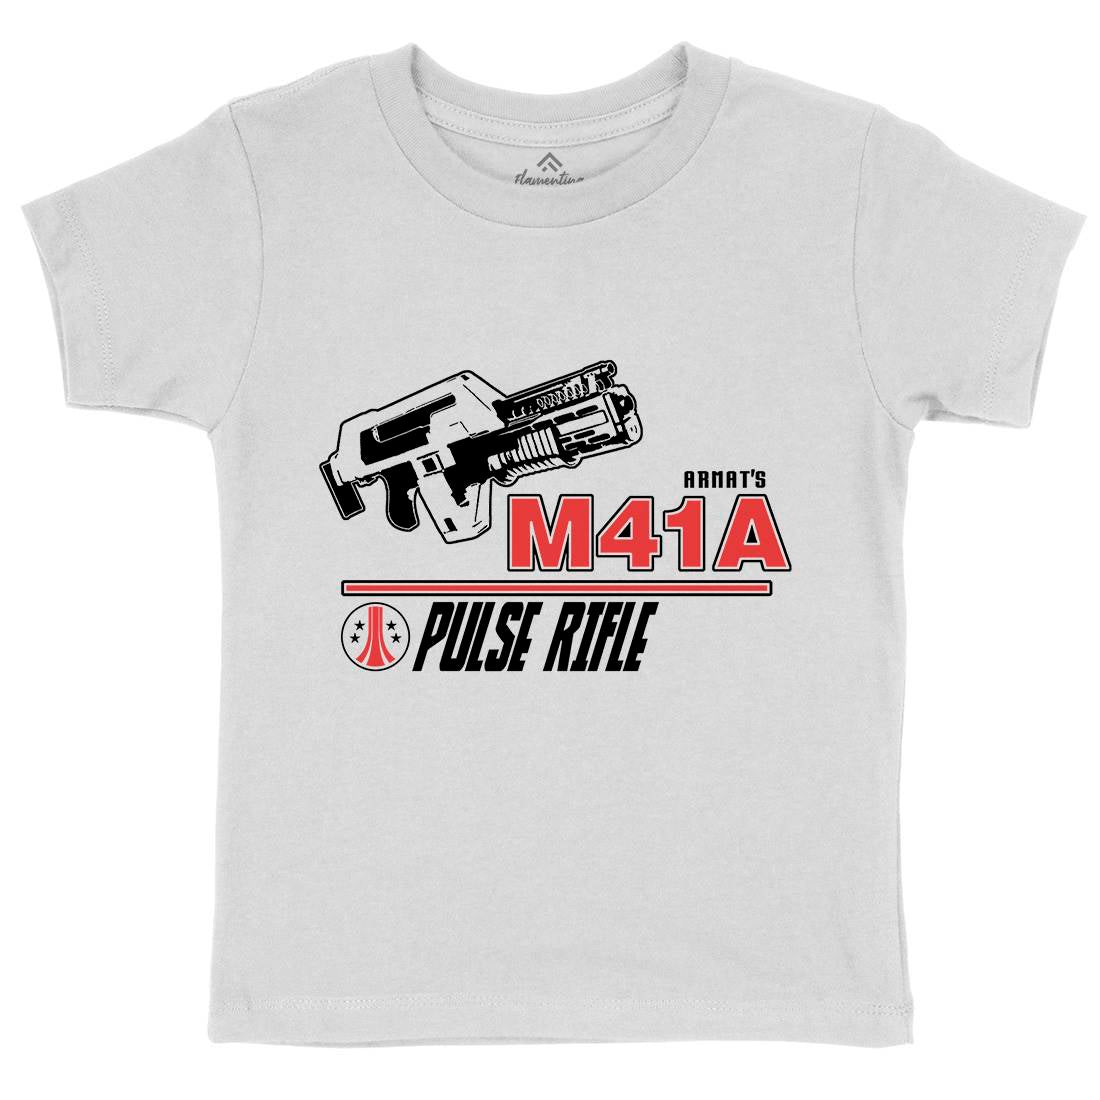 M41A Kids Crew Neck T-Shirt Army D153